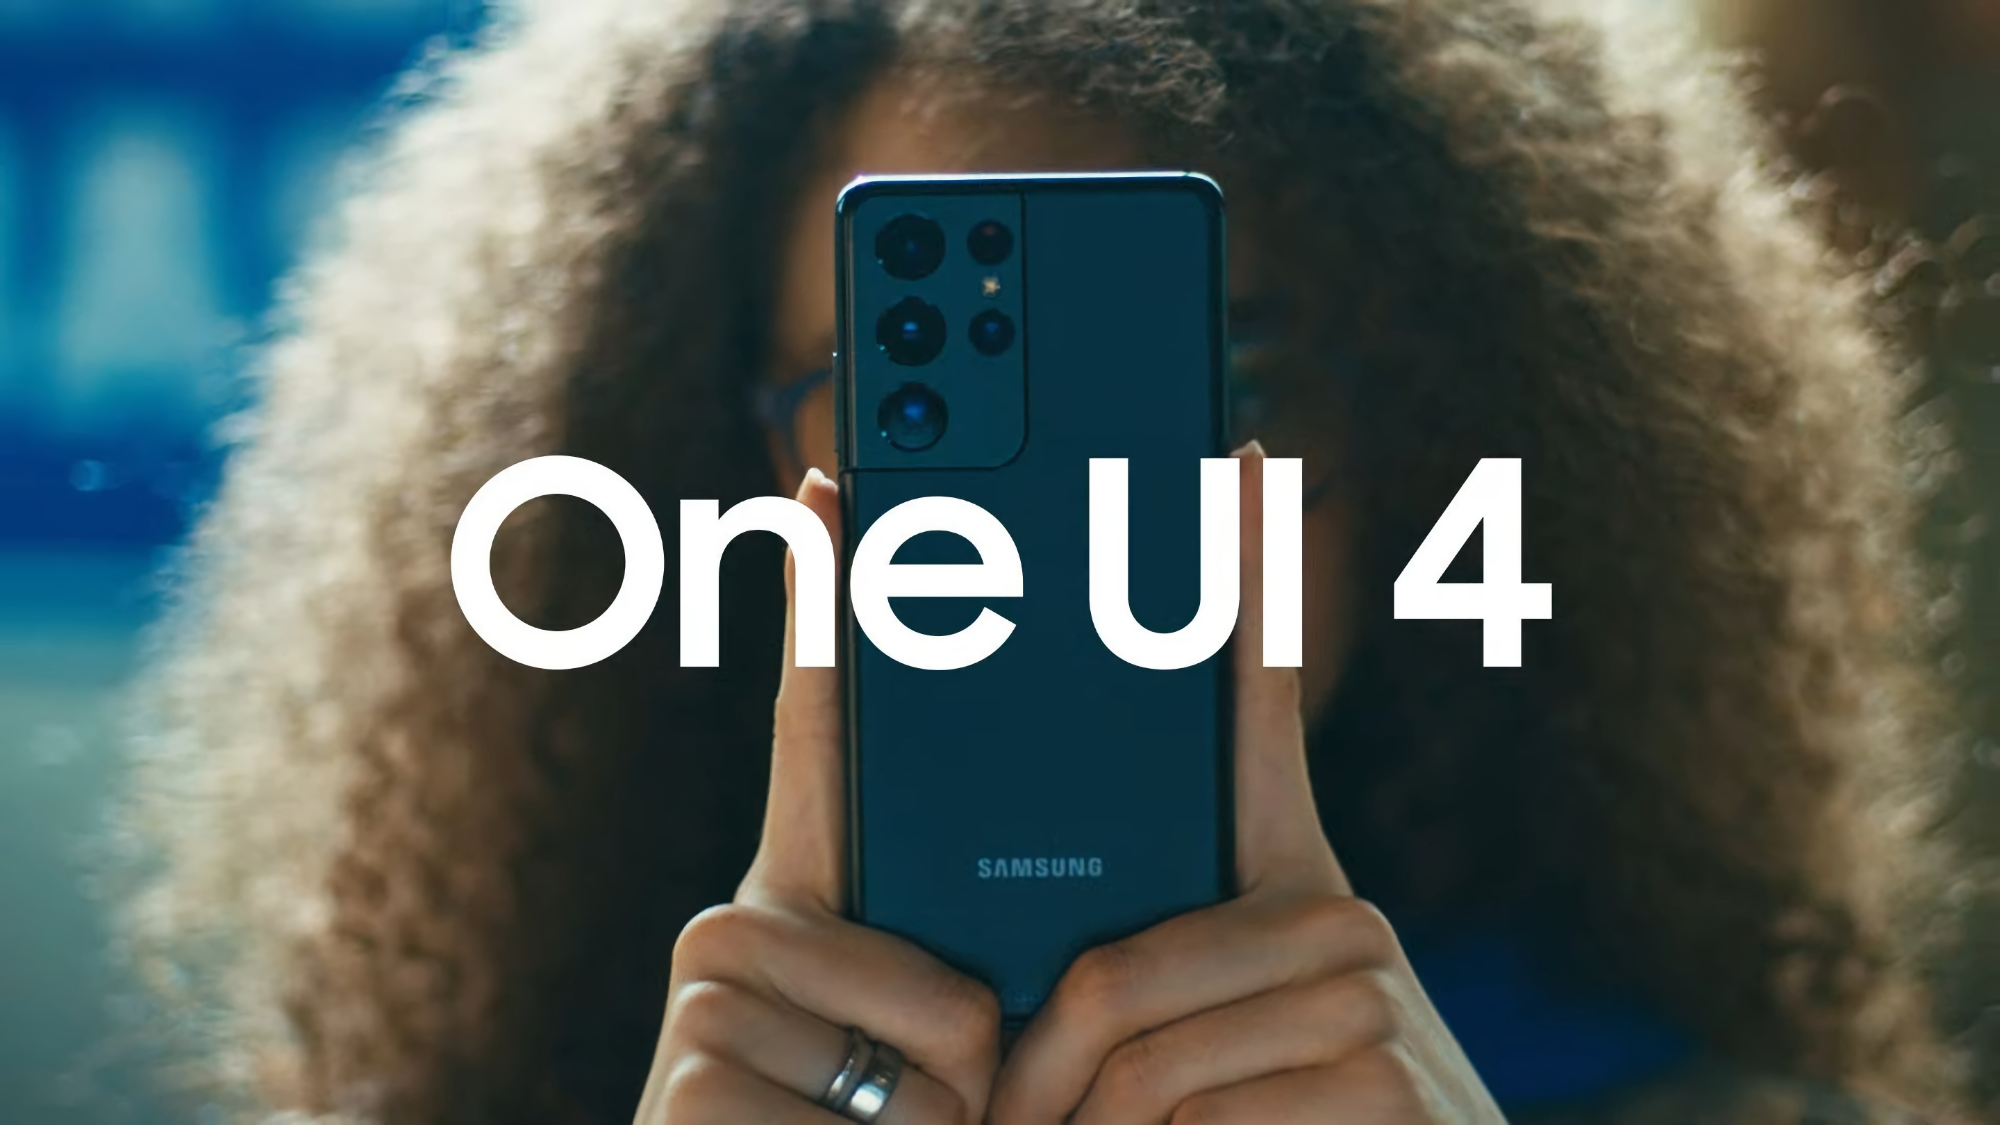 Samsung veröffentlicht dritte Beta-Version von One UI 4 für Galaxy S21 mit entfernter Werbung, neuen Animationen und Wetter-App